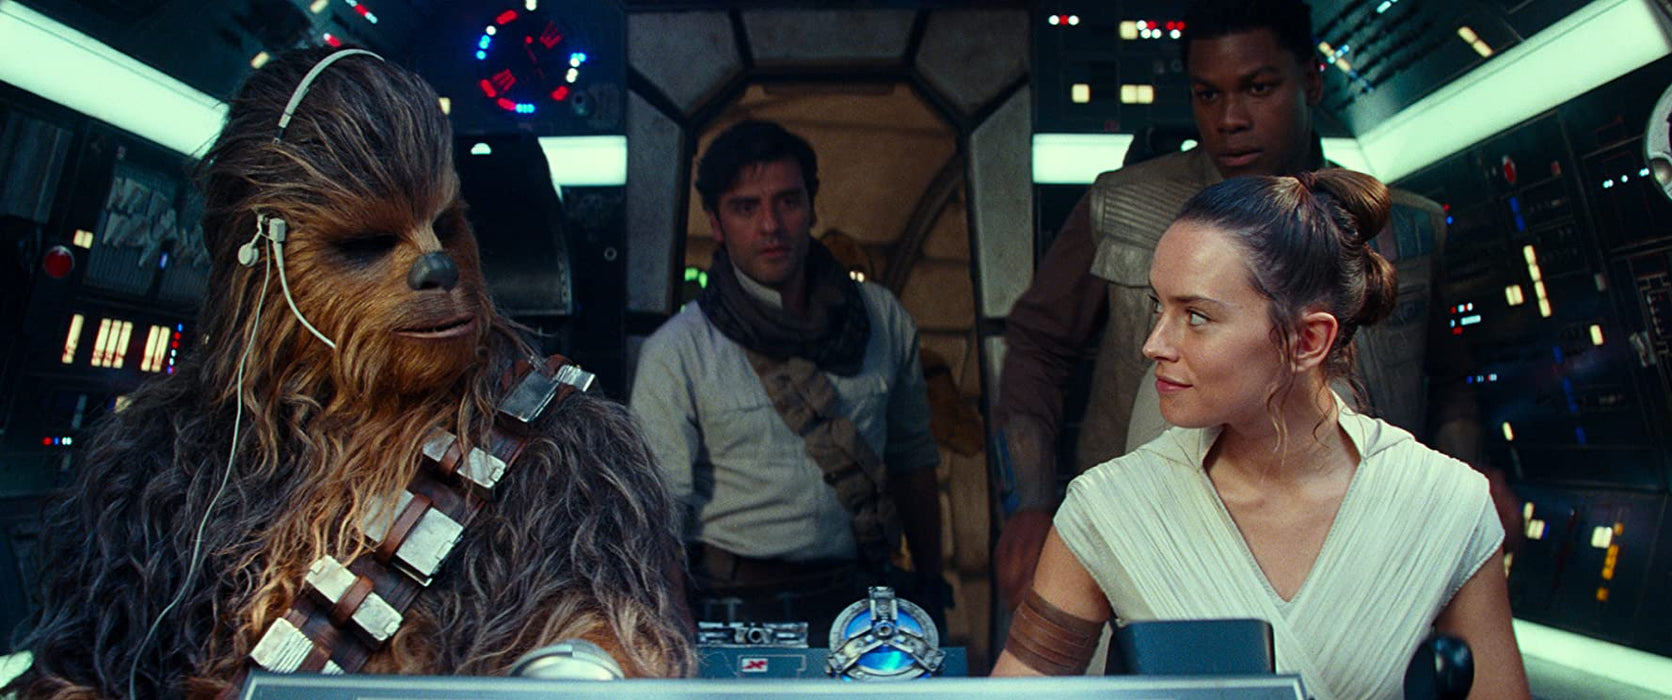 Star Wars: Episode IX - The Rise of Skywalker  [3D + 2D Blu-ray]